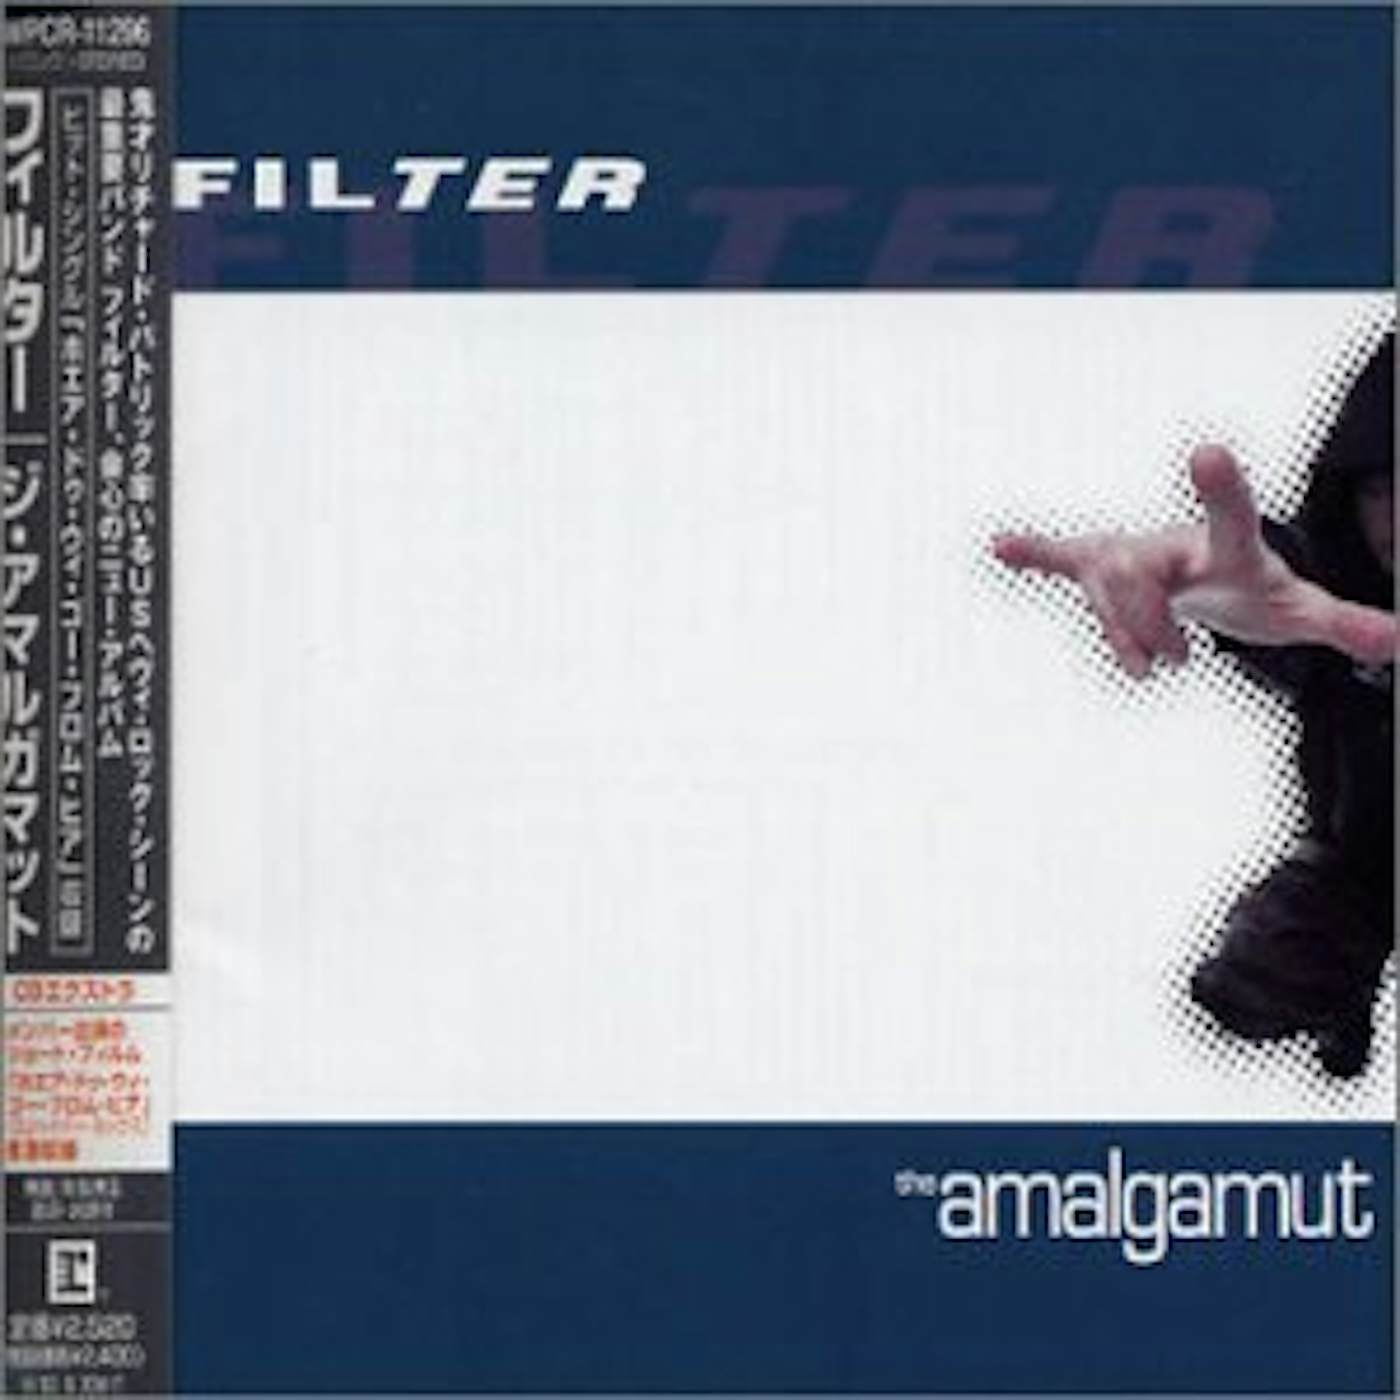 Filter AMALGAMUT CD